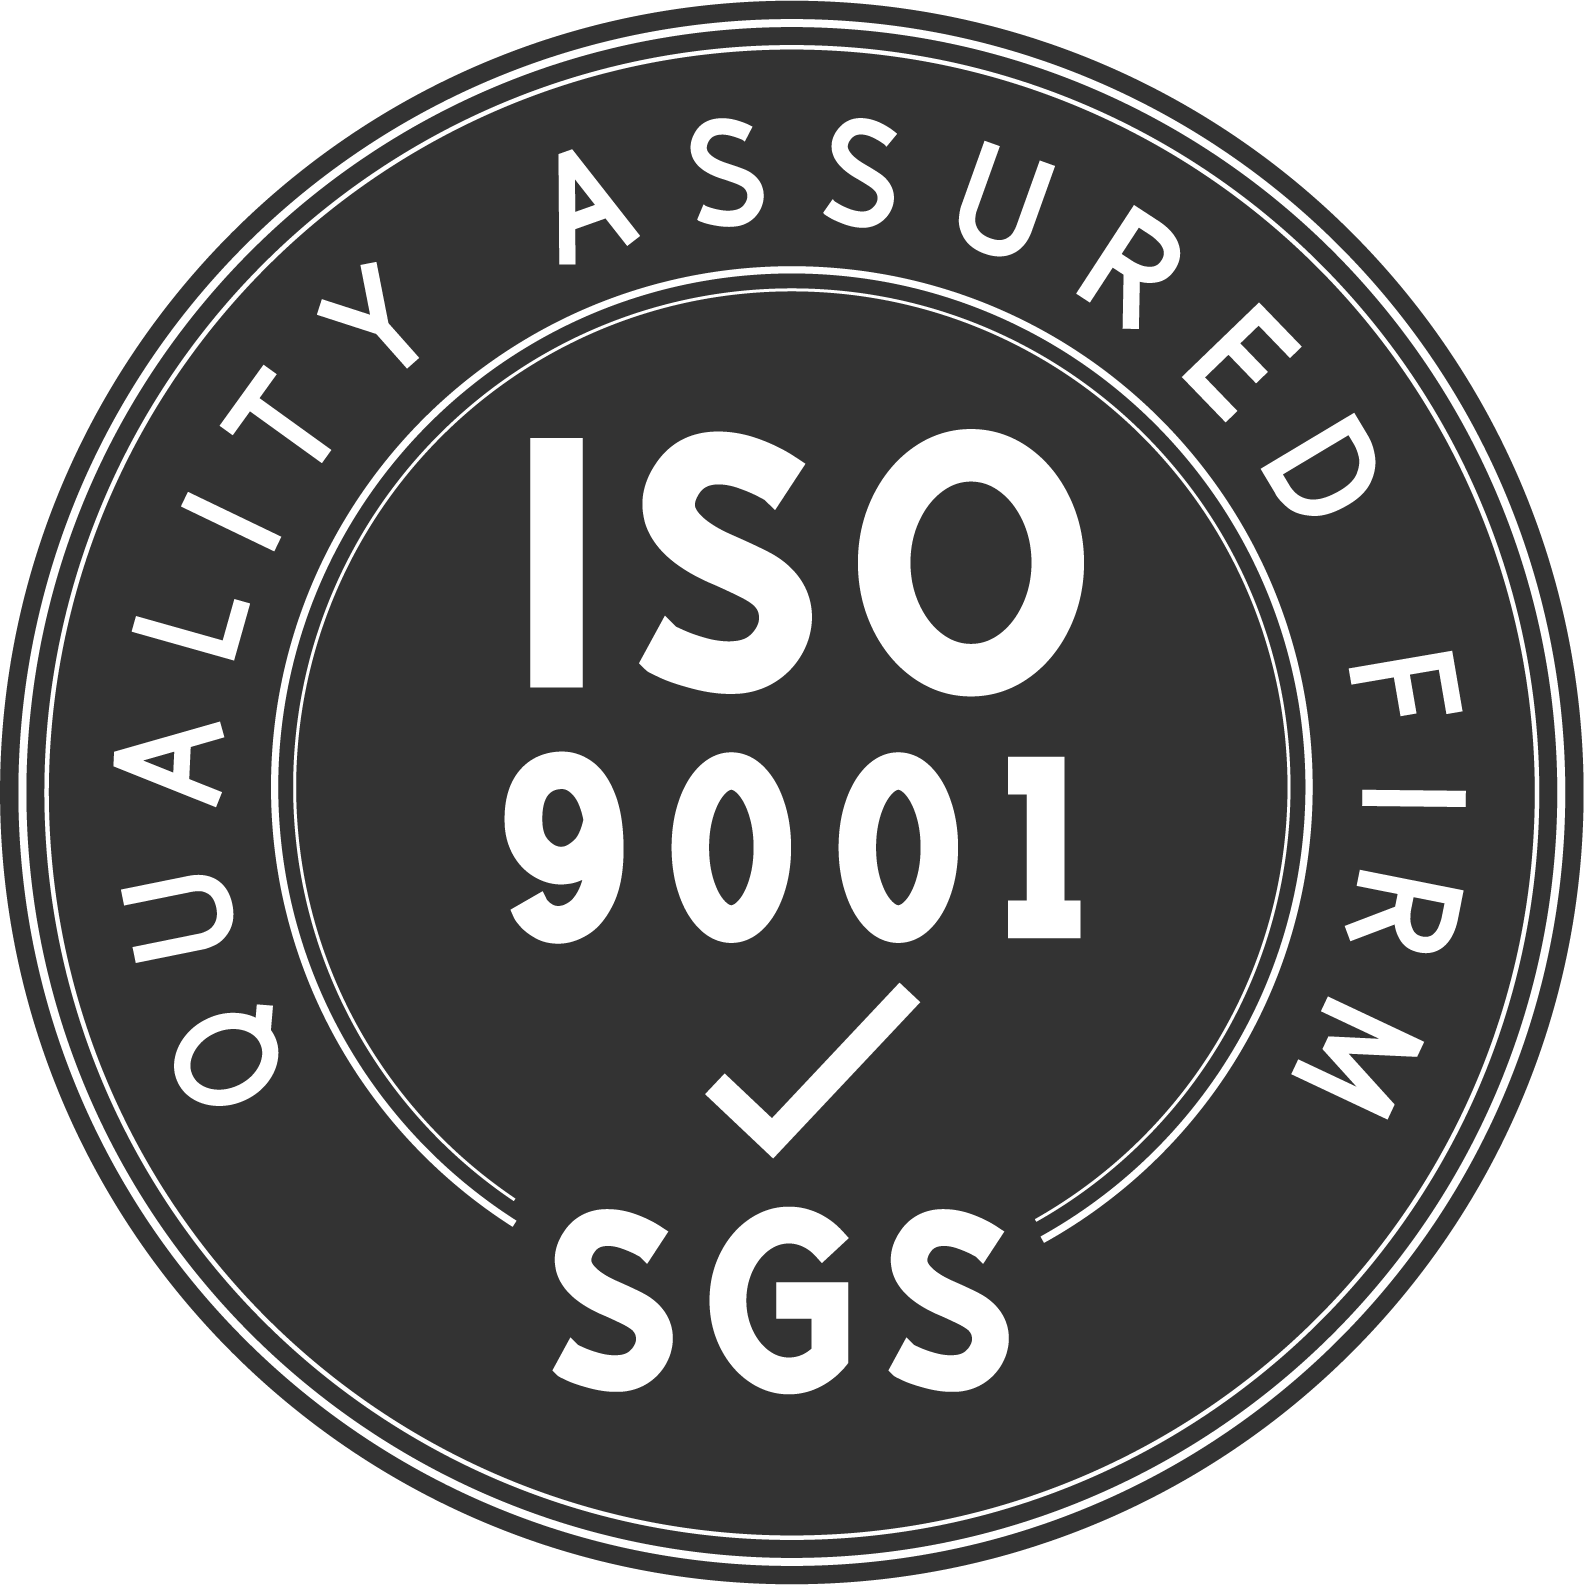 Naša fabrika je ISO9001:2005 certificirani proizvođač visokokvalitetnih proizvoda